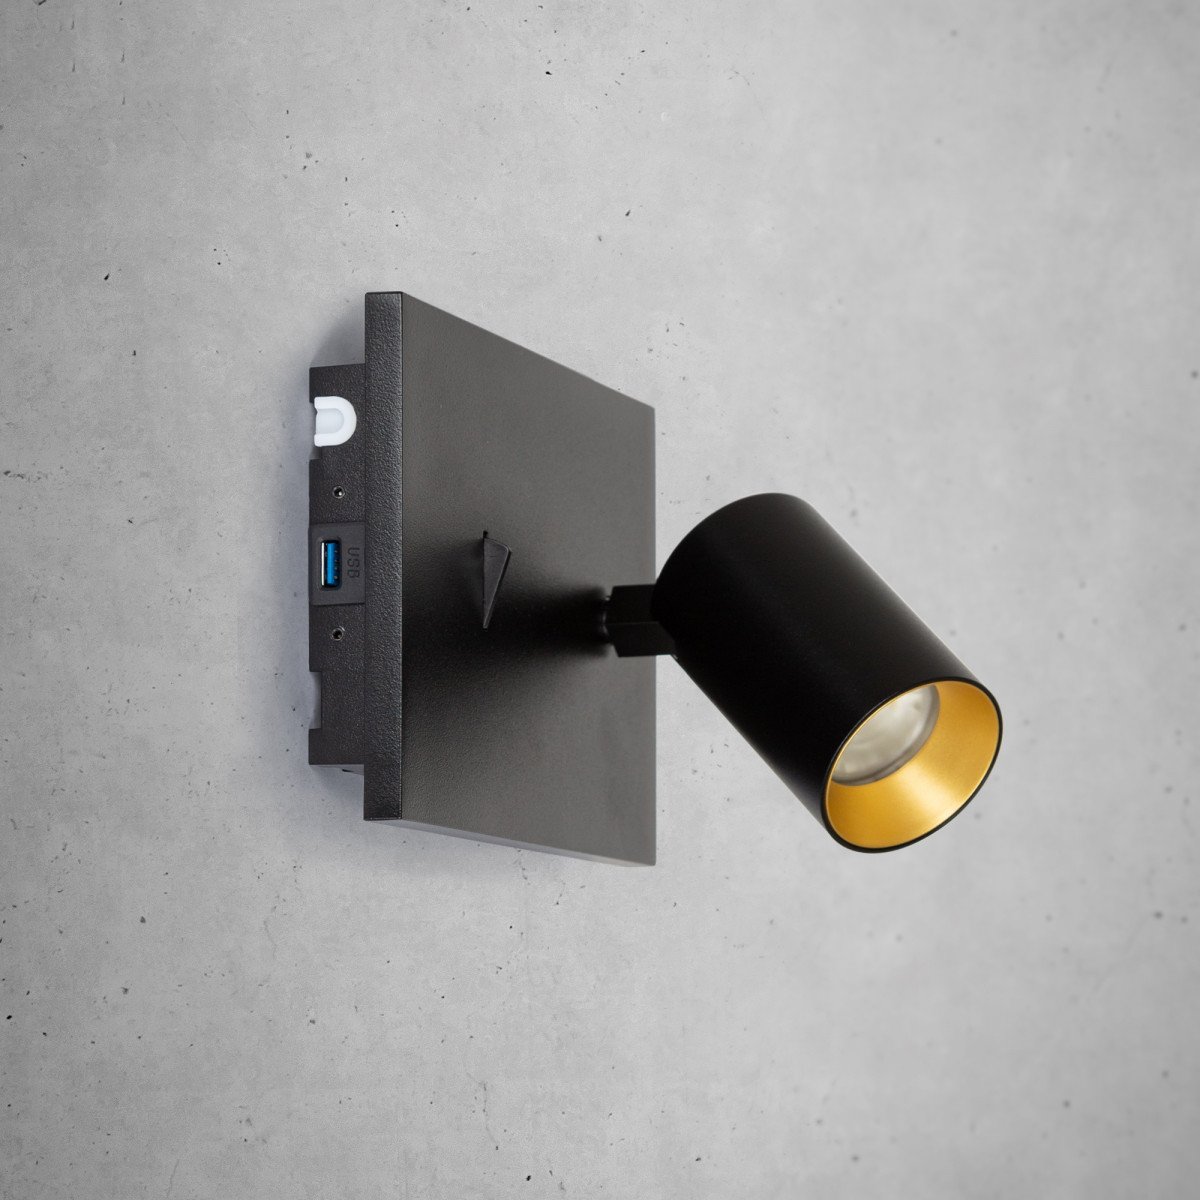 Moderner Wandspot Mila mit USB-Anschlüssen und Ein/Aus-Schalter in schwarzer Farbe